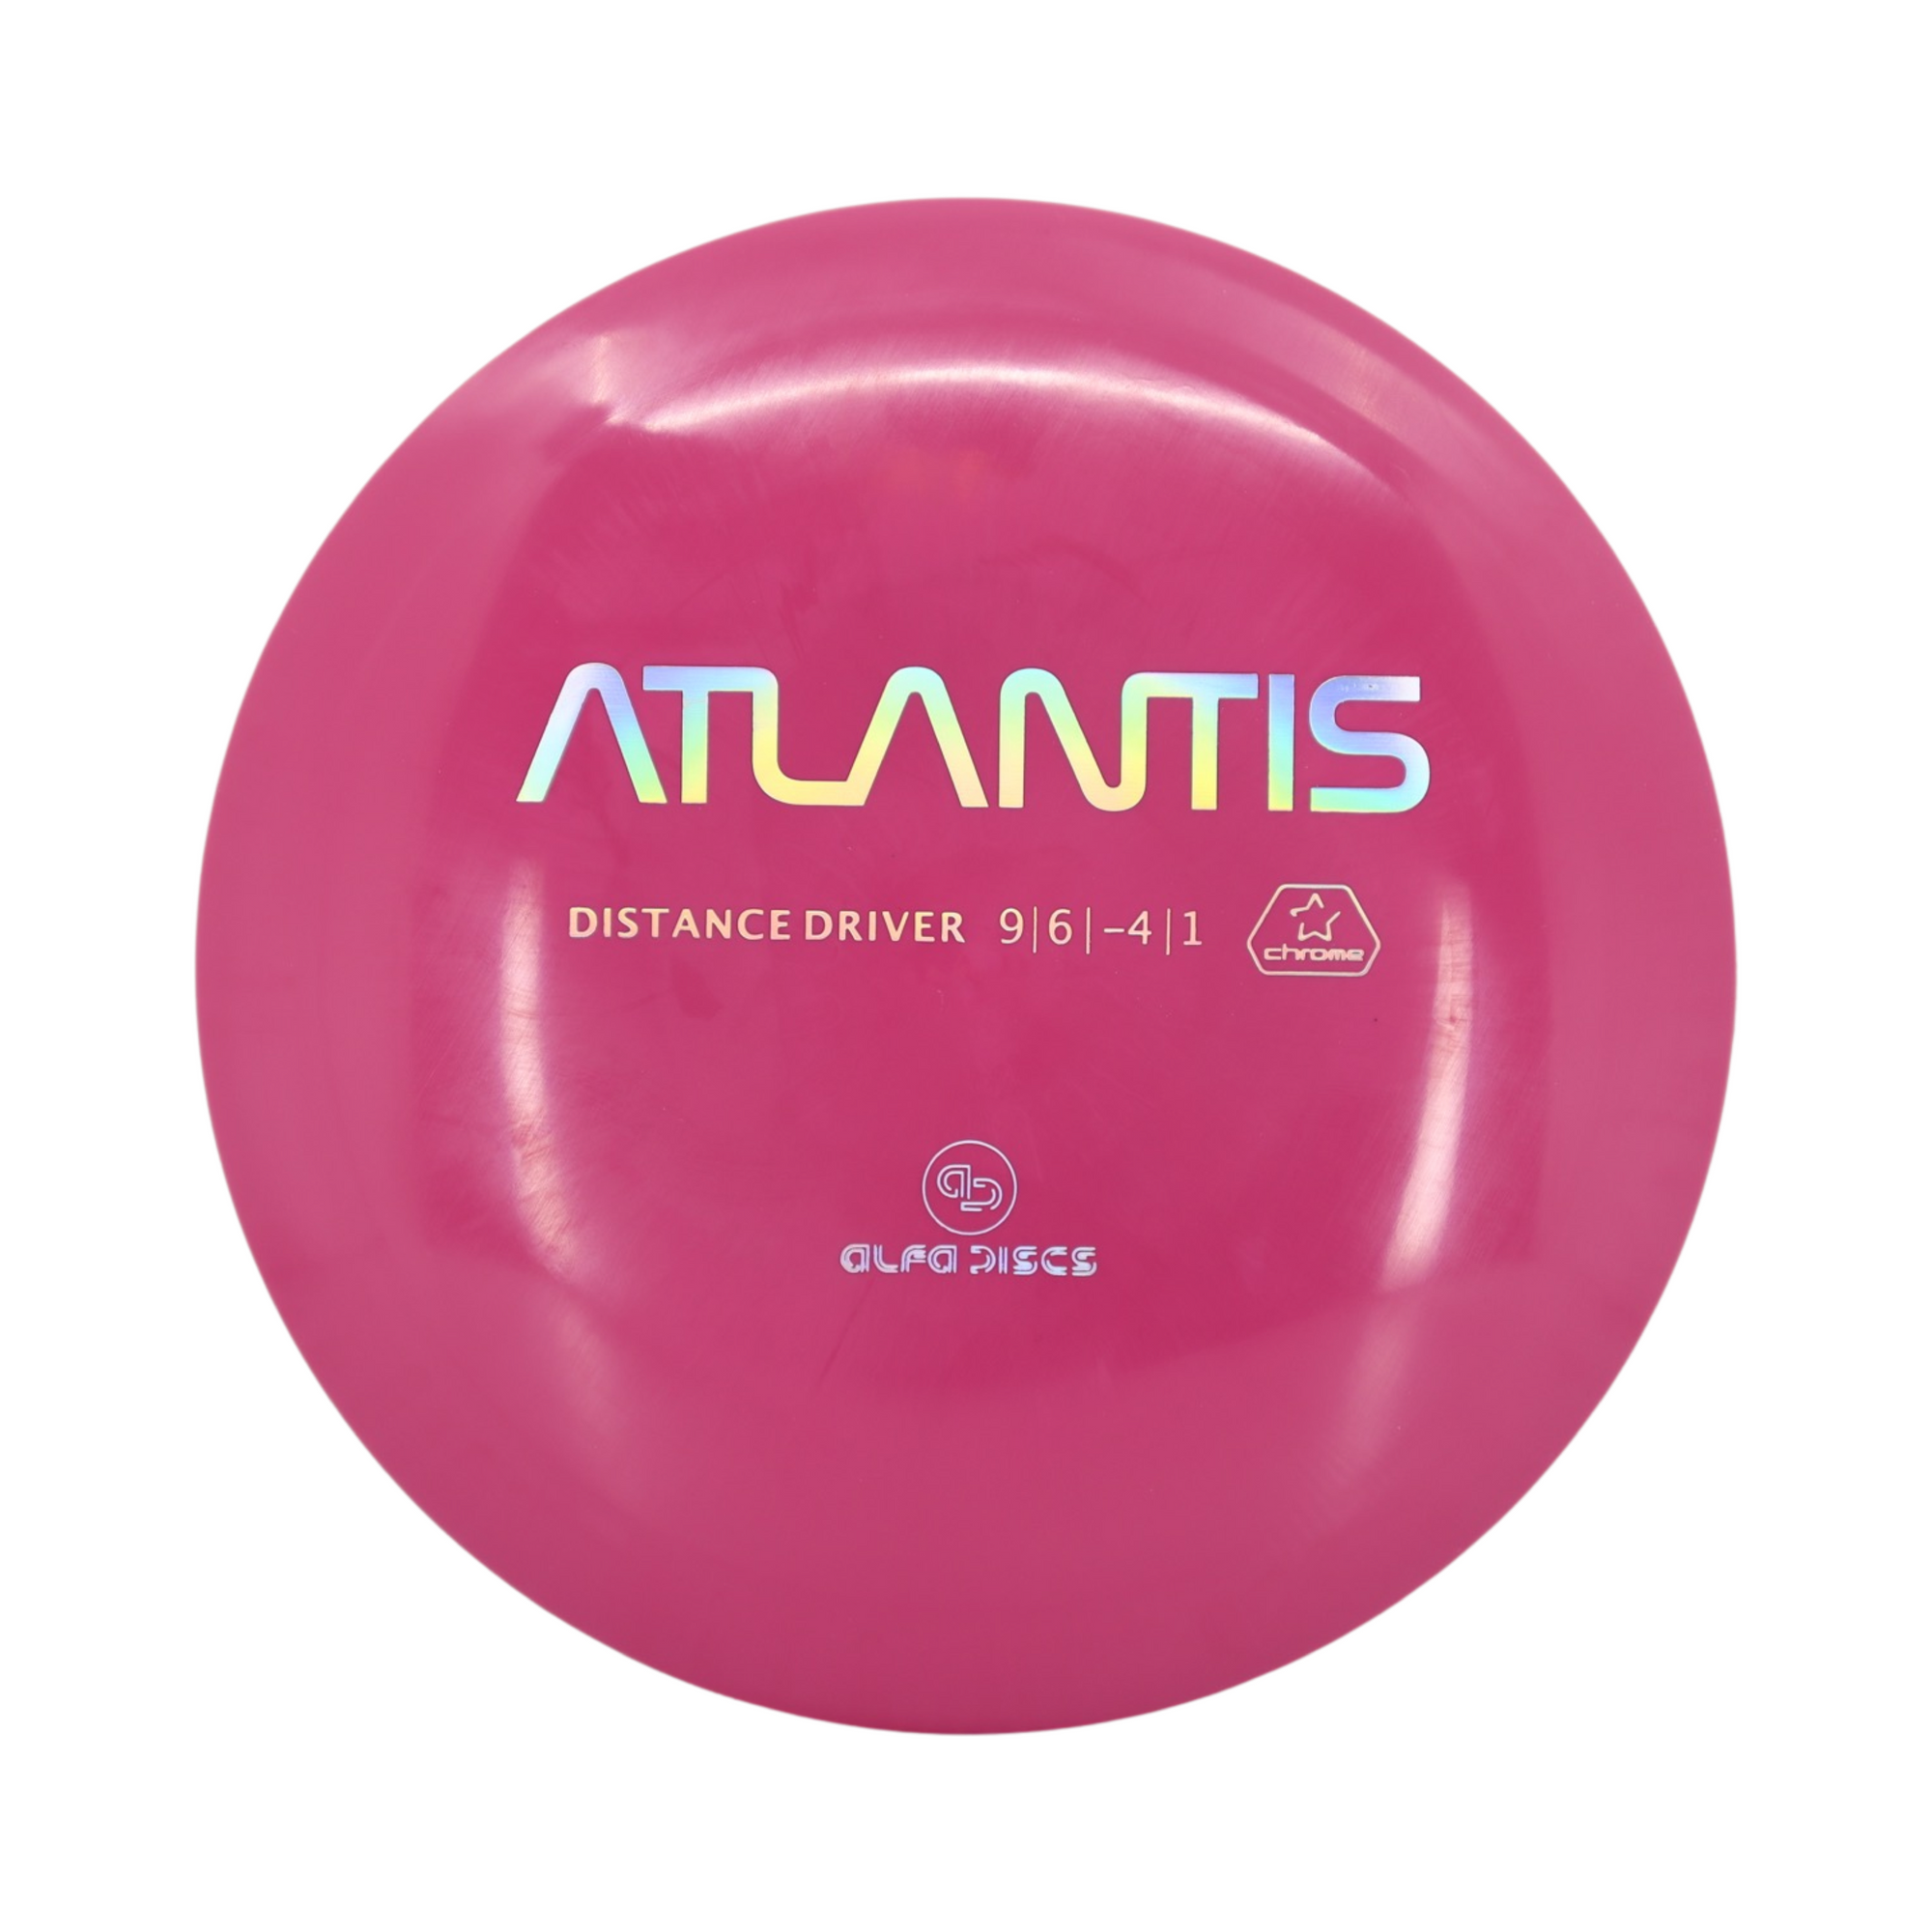 Alfa Discs Chrome Atlantis